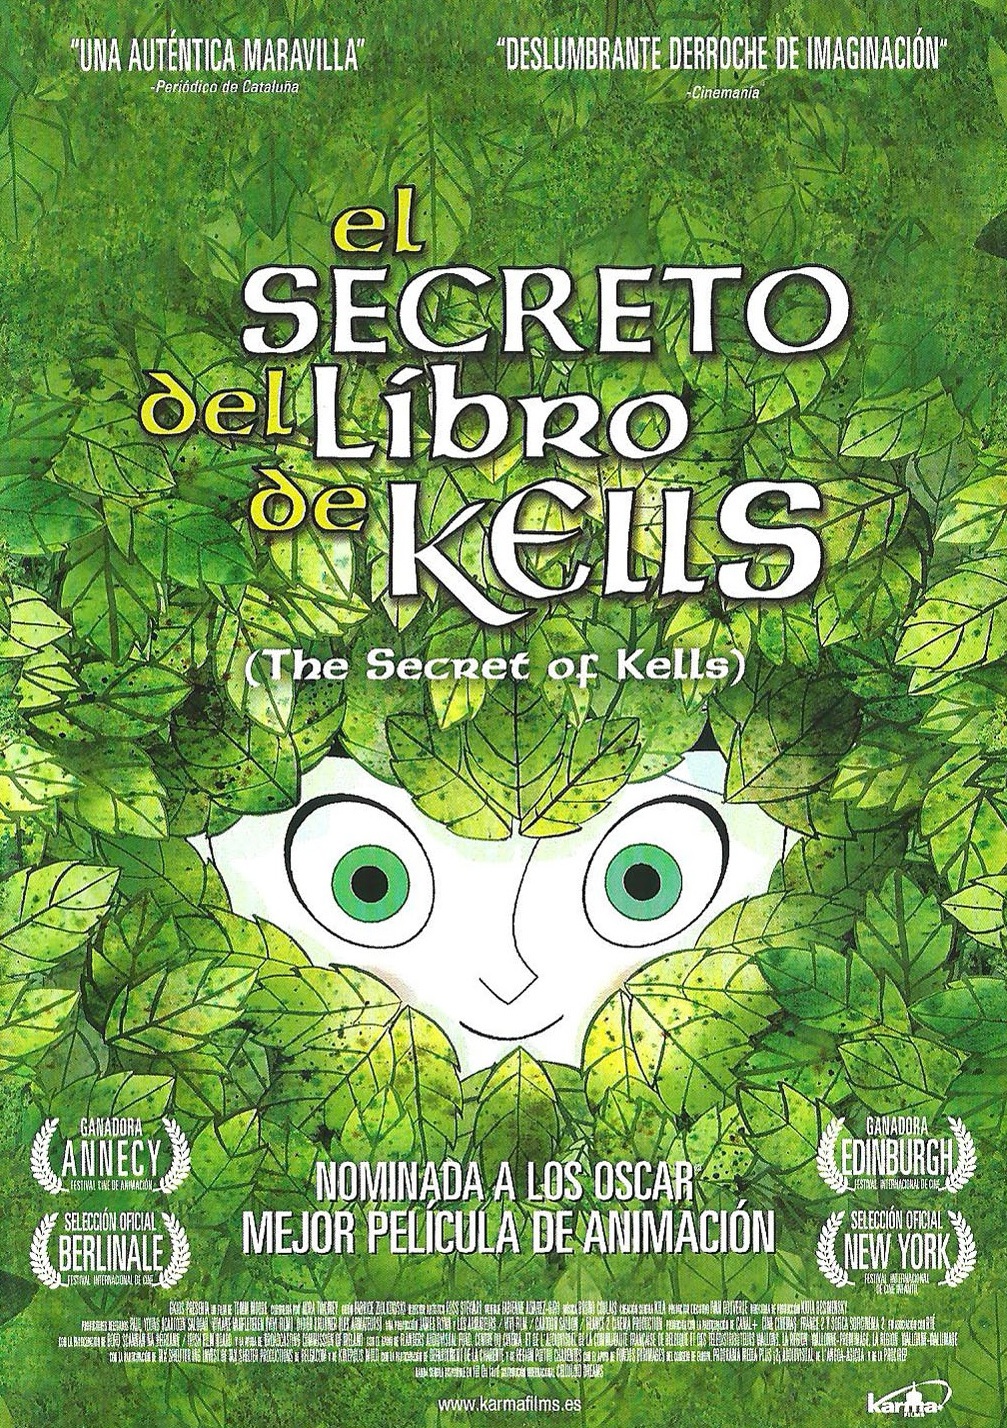 El secreto del libro de Kells 